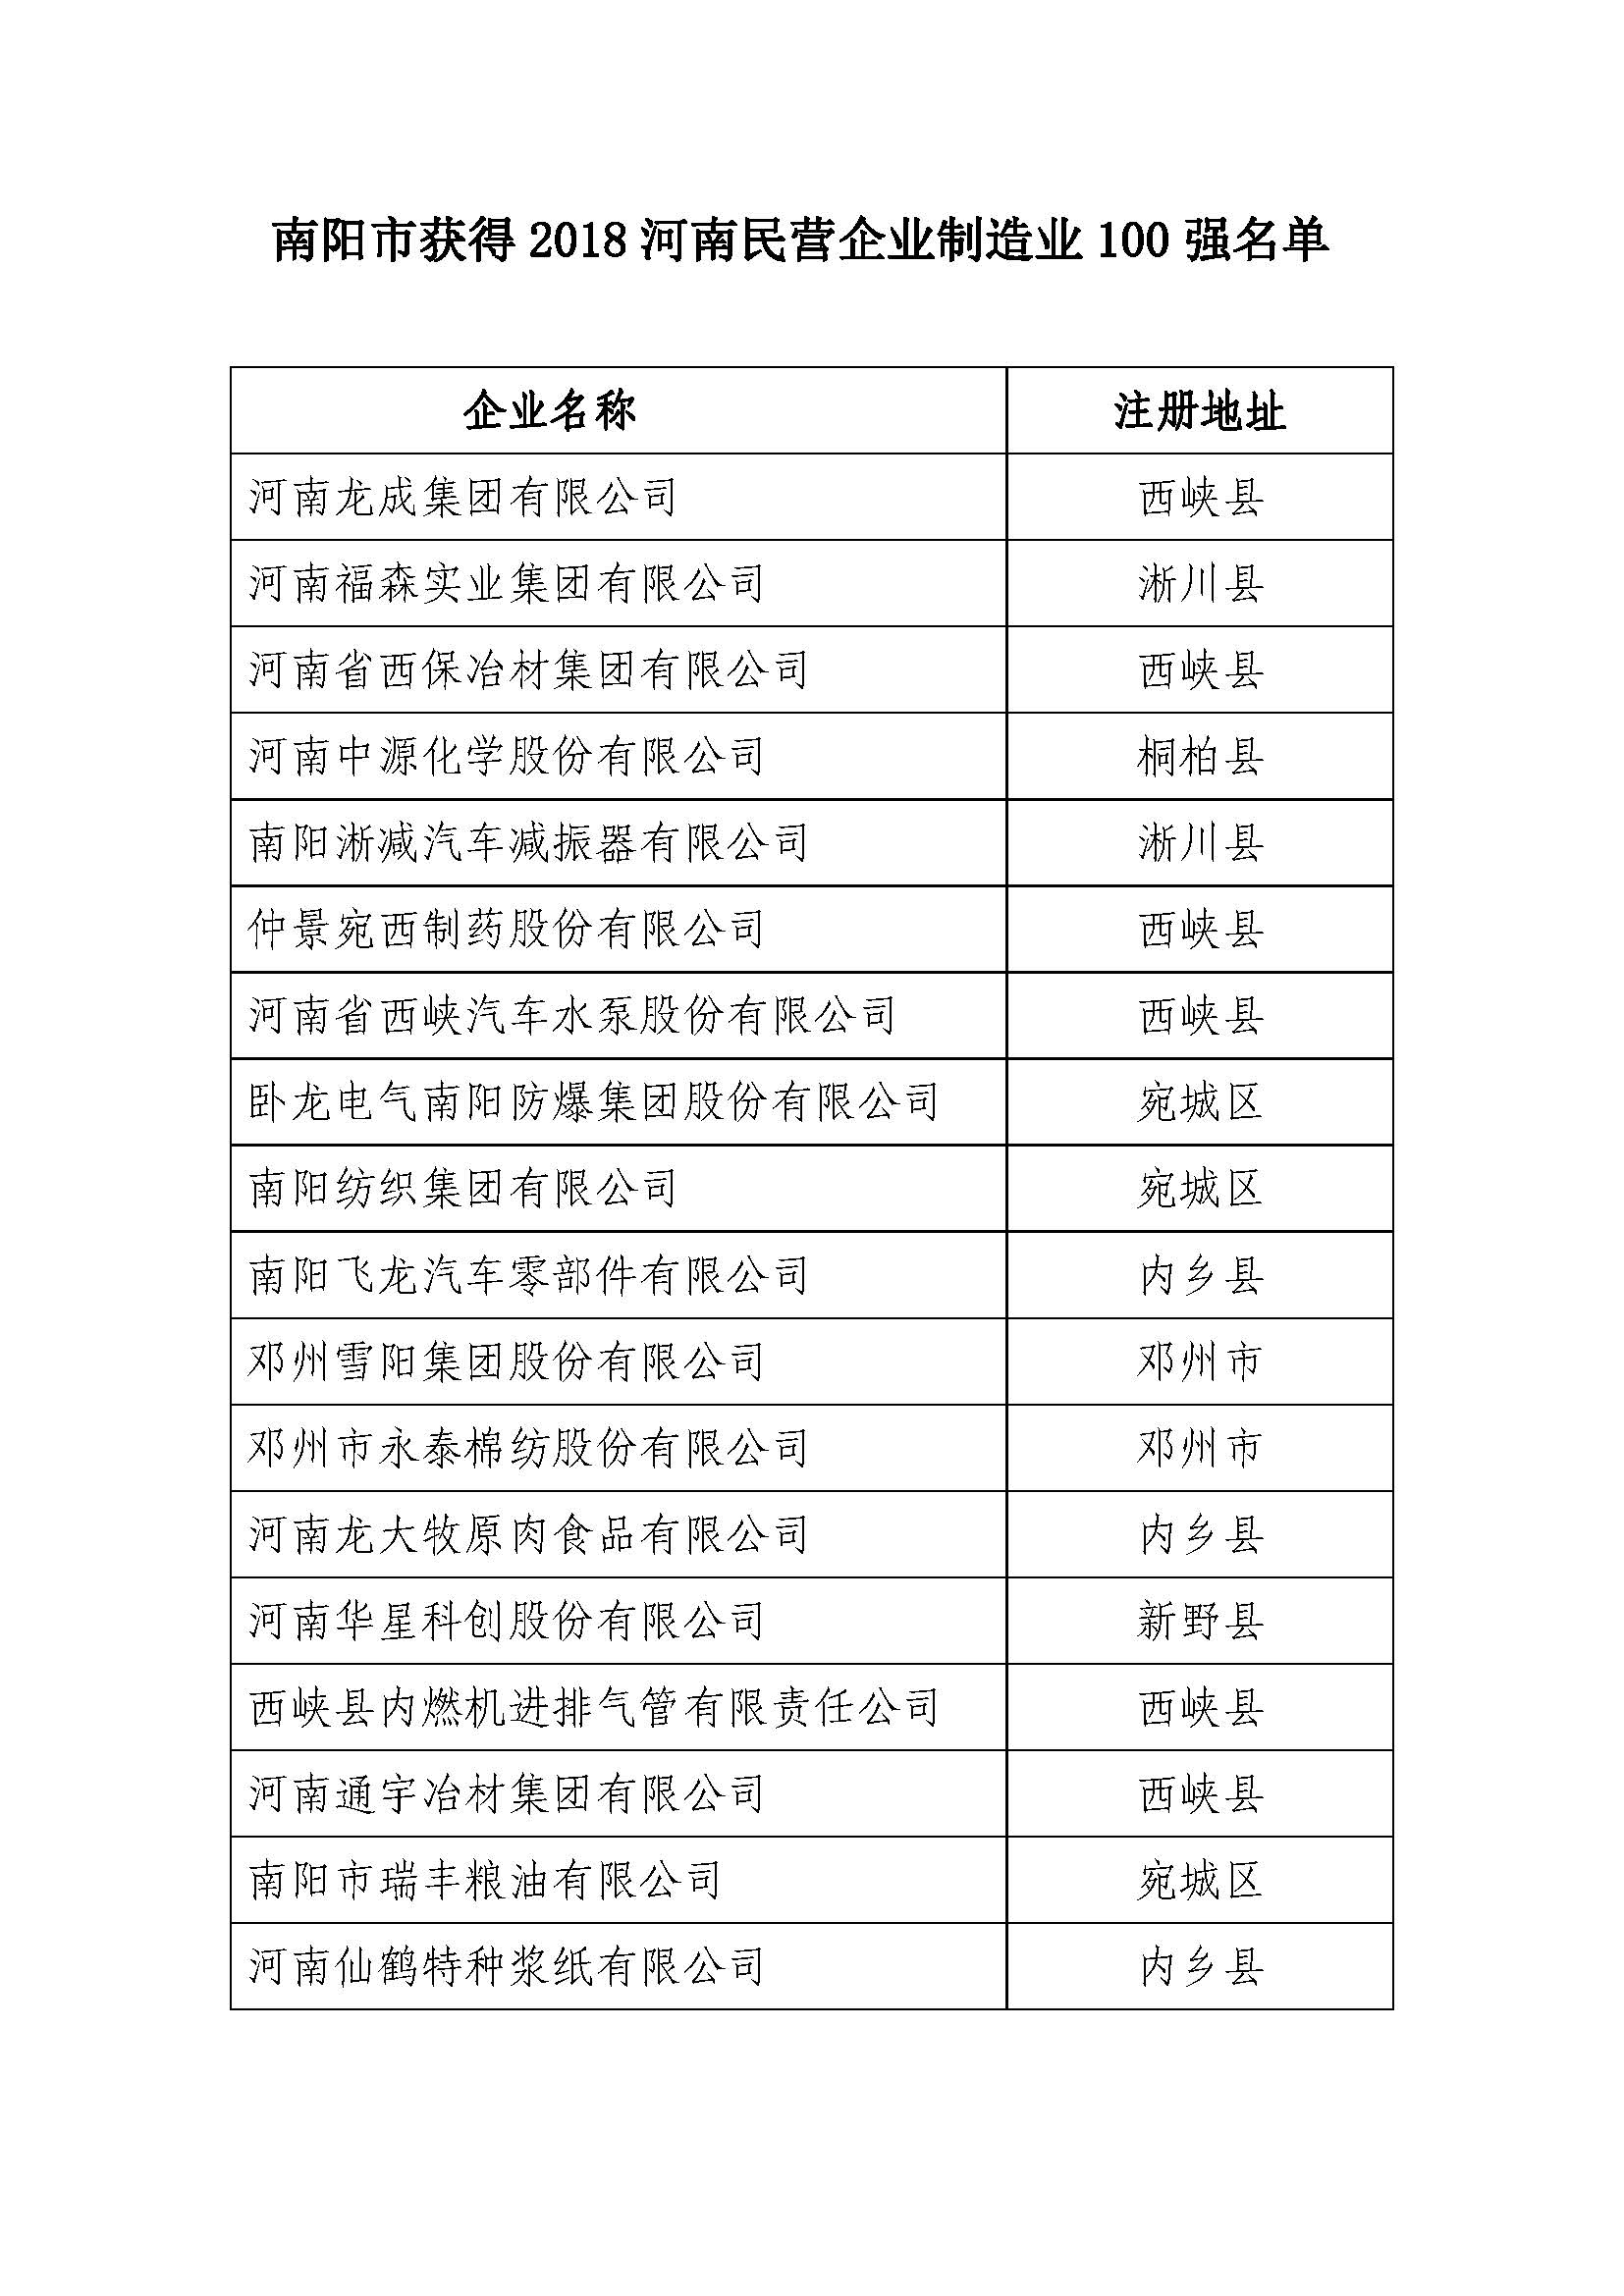 南阳市获得2018河南民营企业制造业100强名单.jpg